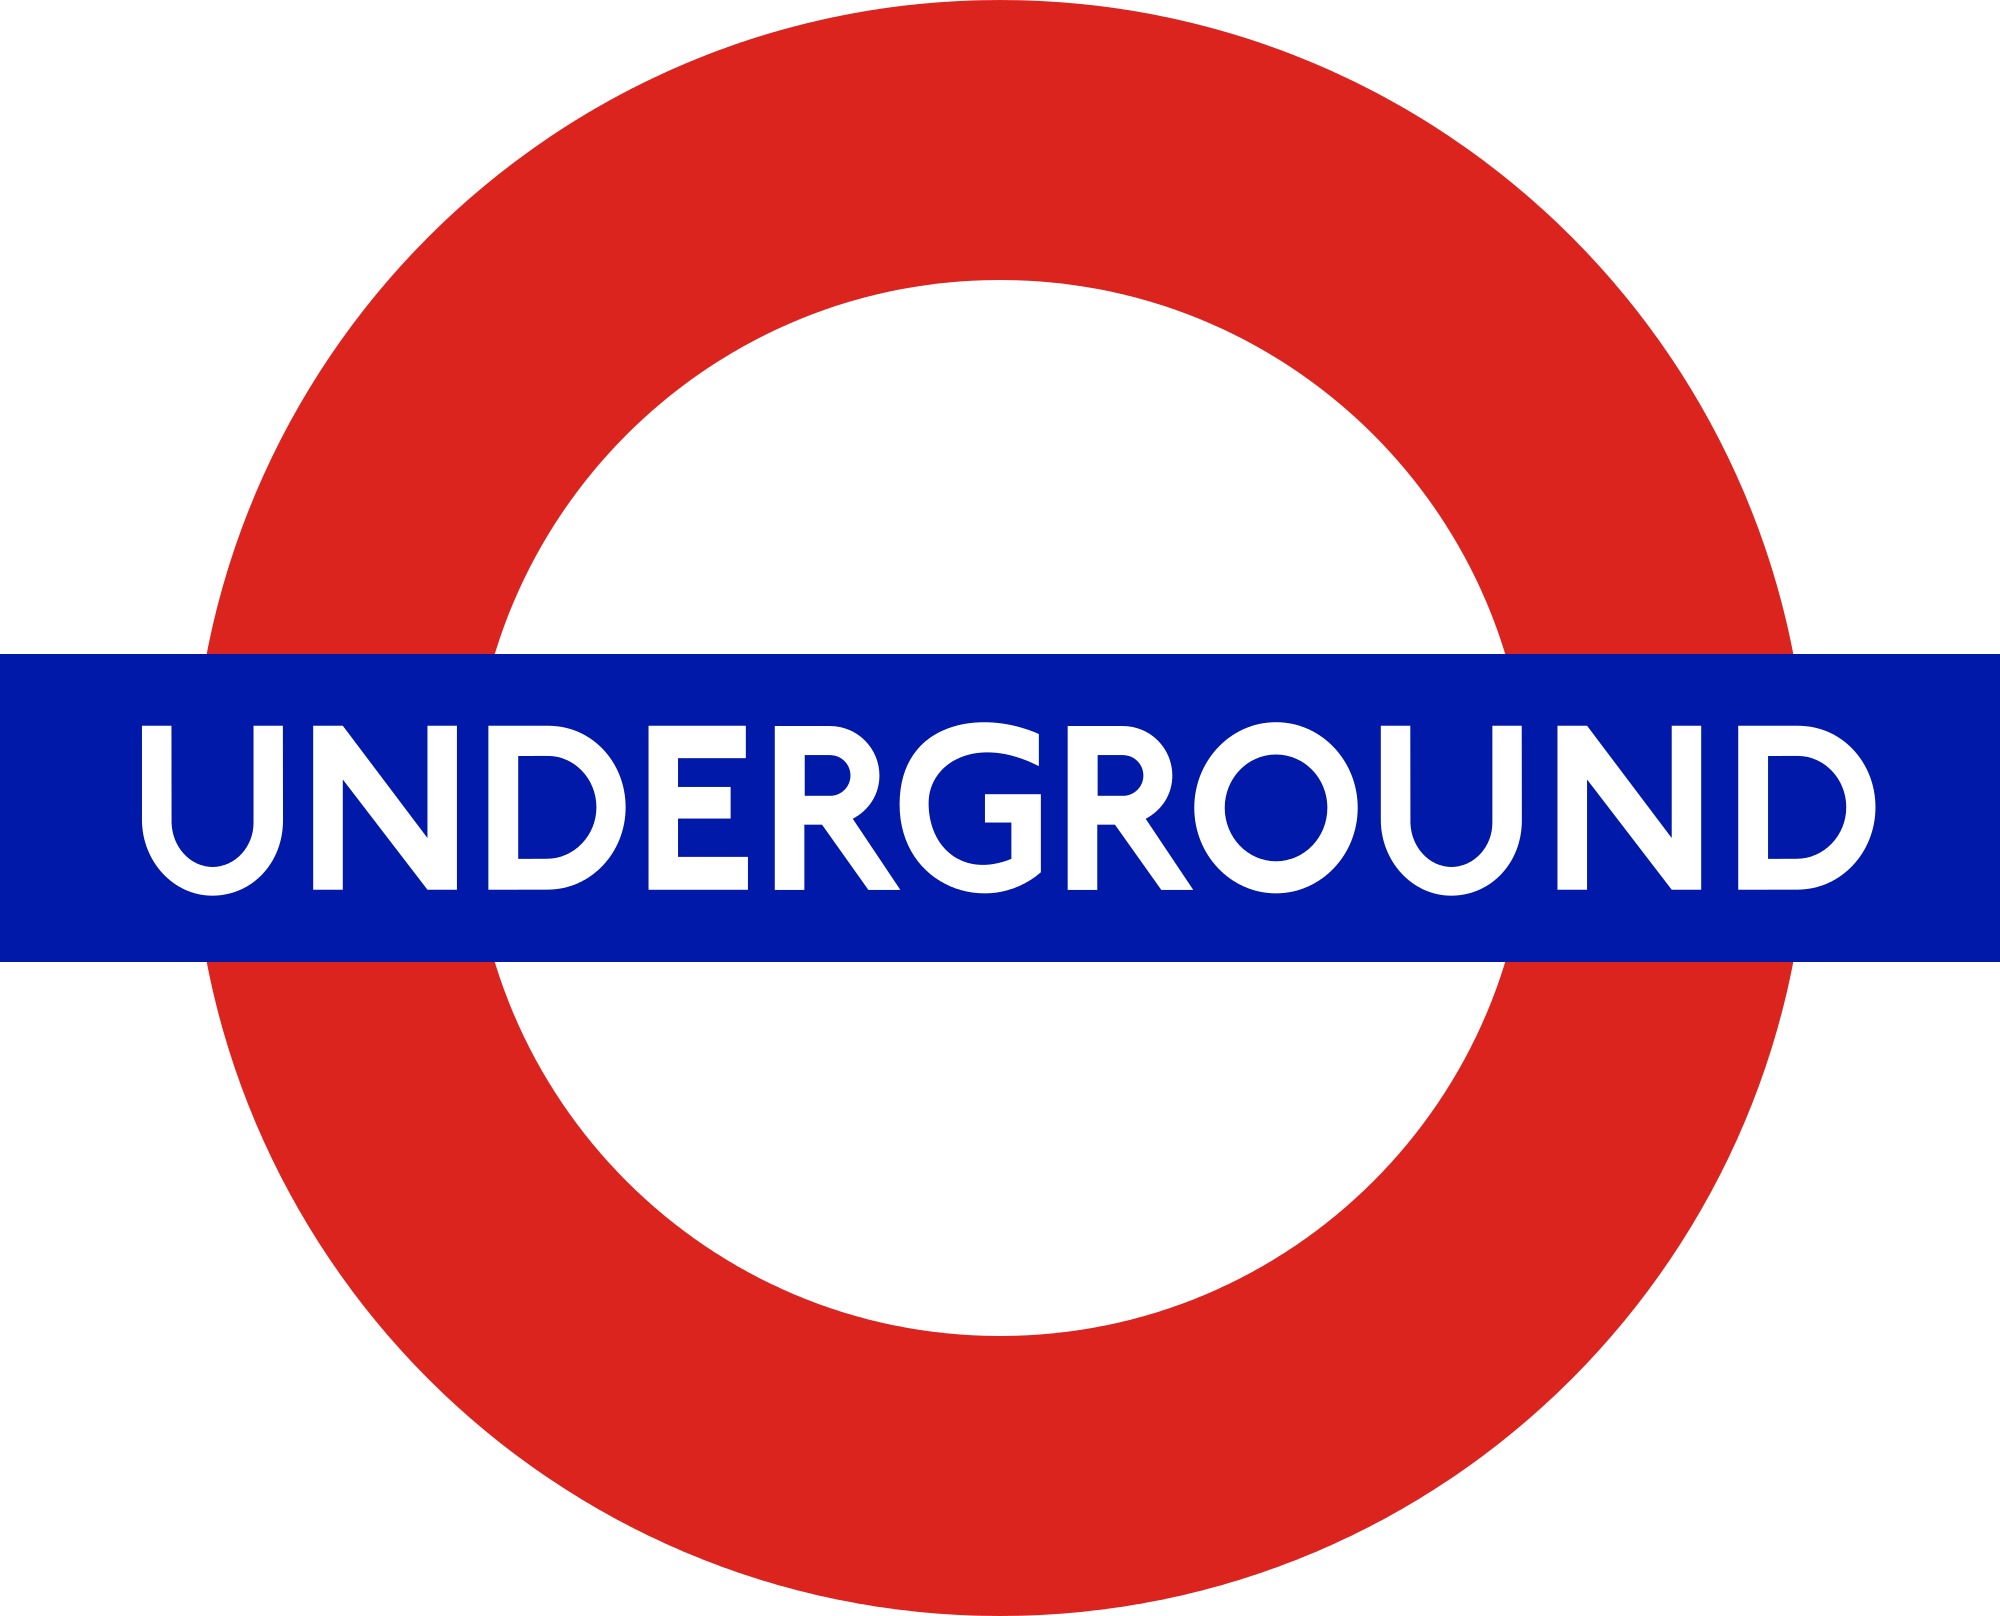 London Underground logo - Tunnel Business Magazine